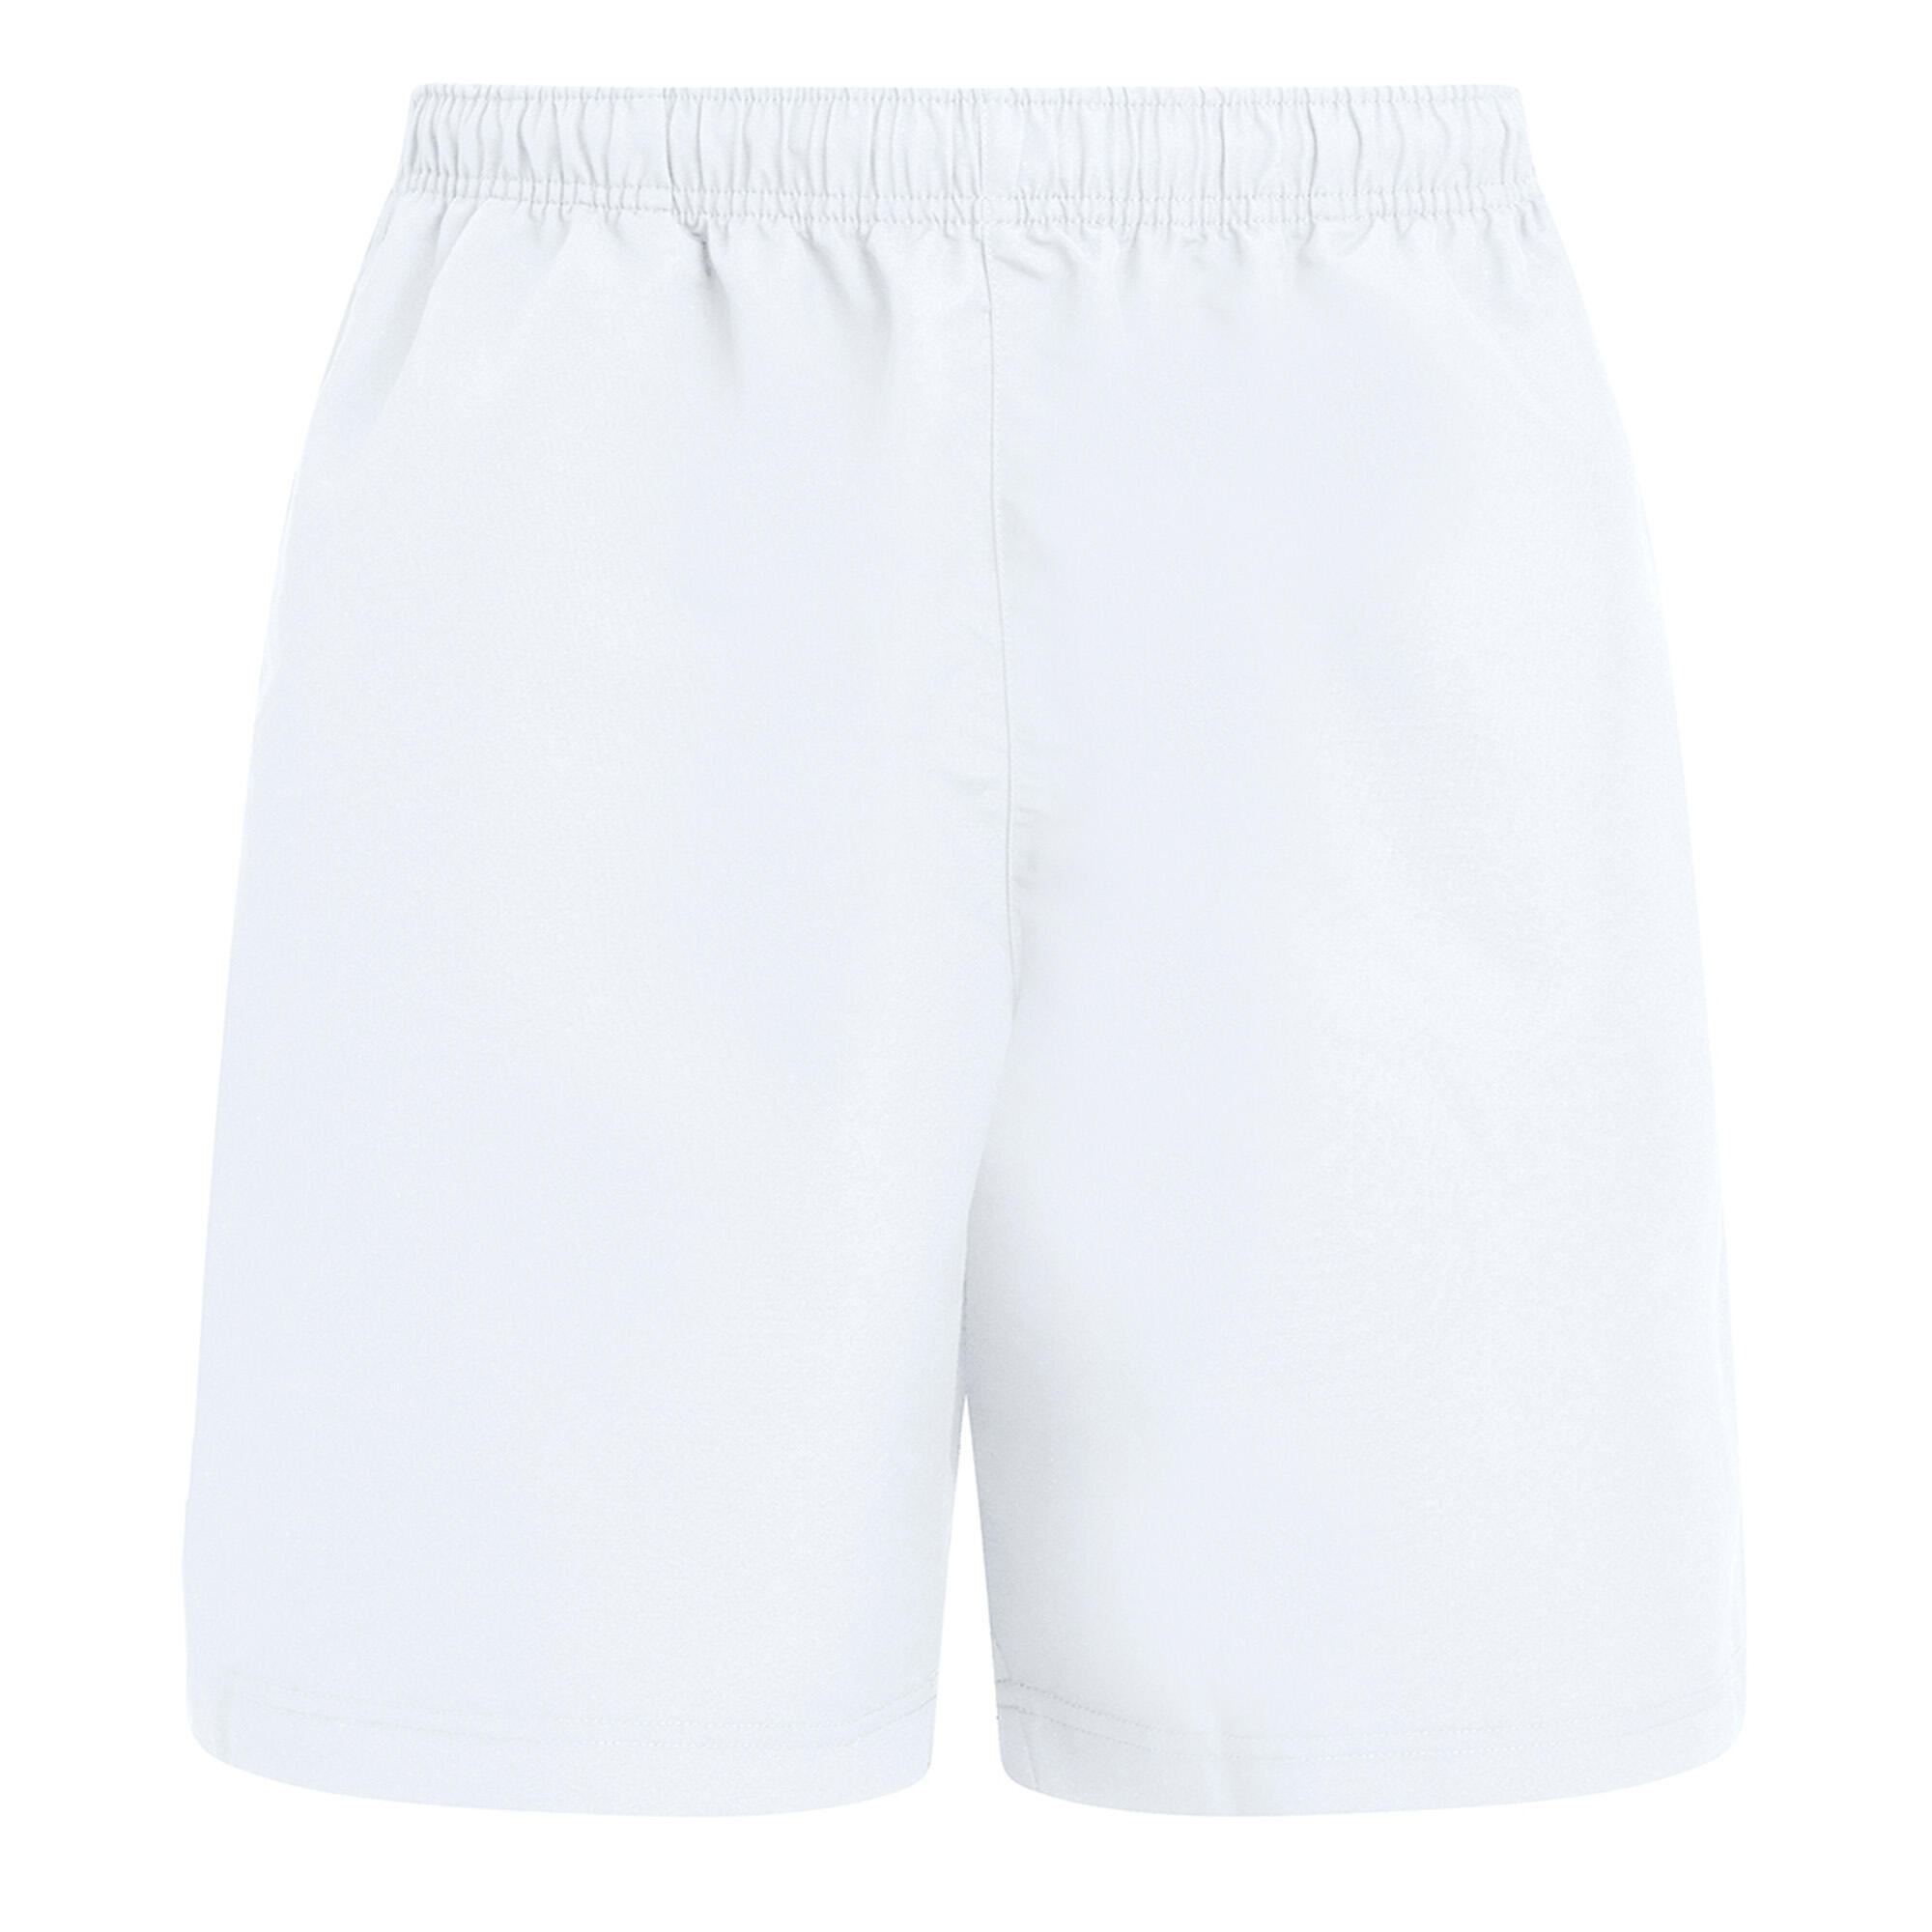 Mens Club Shorts (White) 2/3